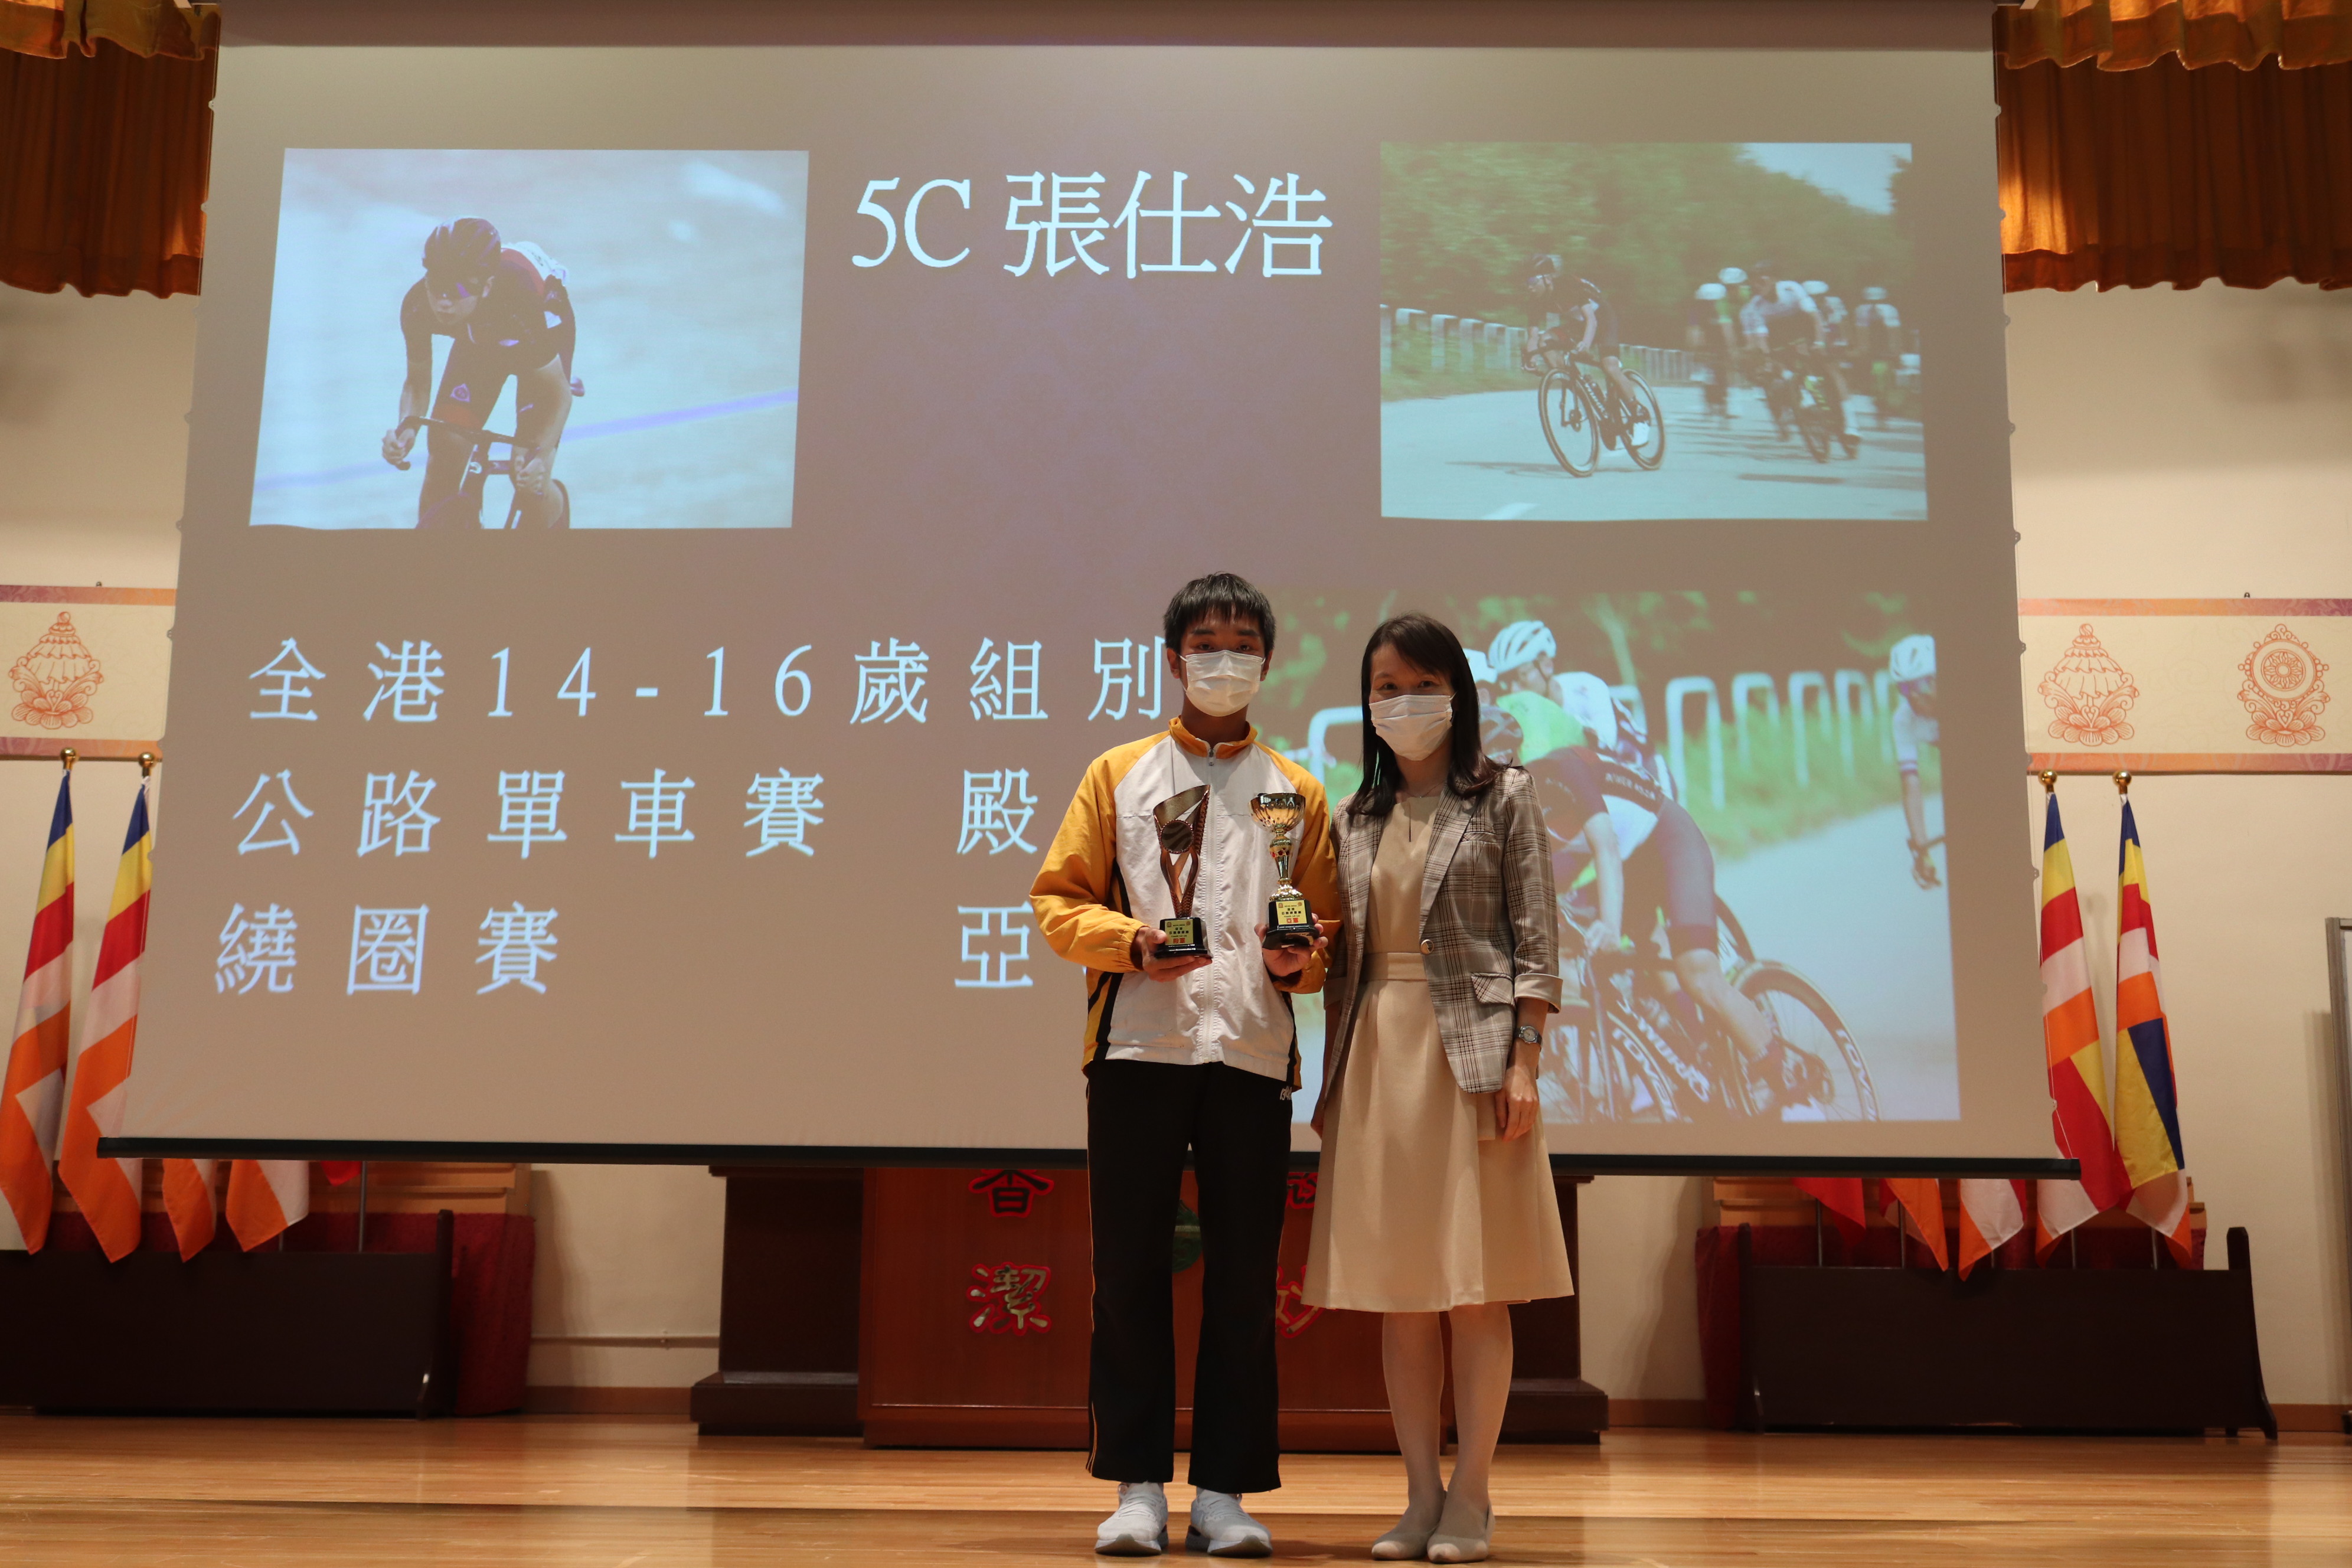 張仕浩 - 全港 14-16 歲組別公路單車賽：殿軍 - 繞圈賽：亞軍